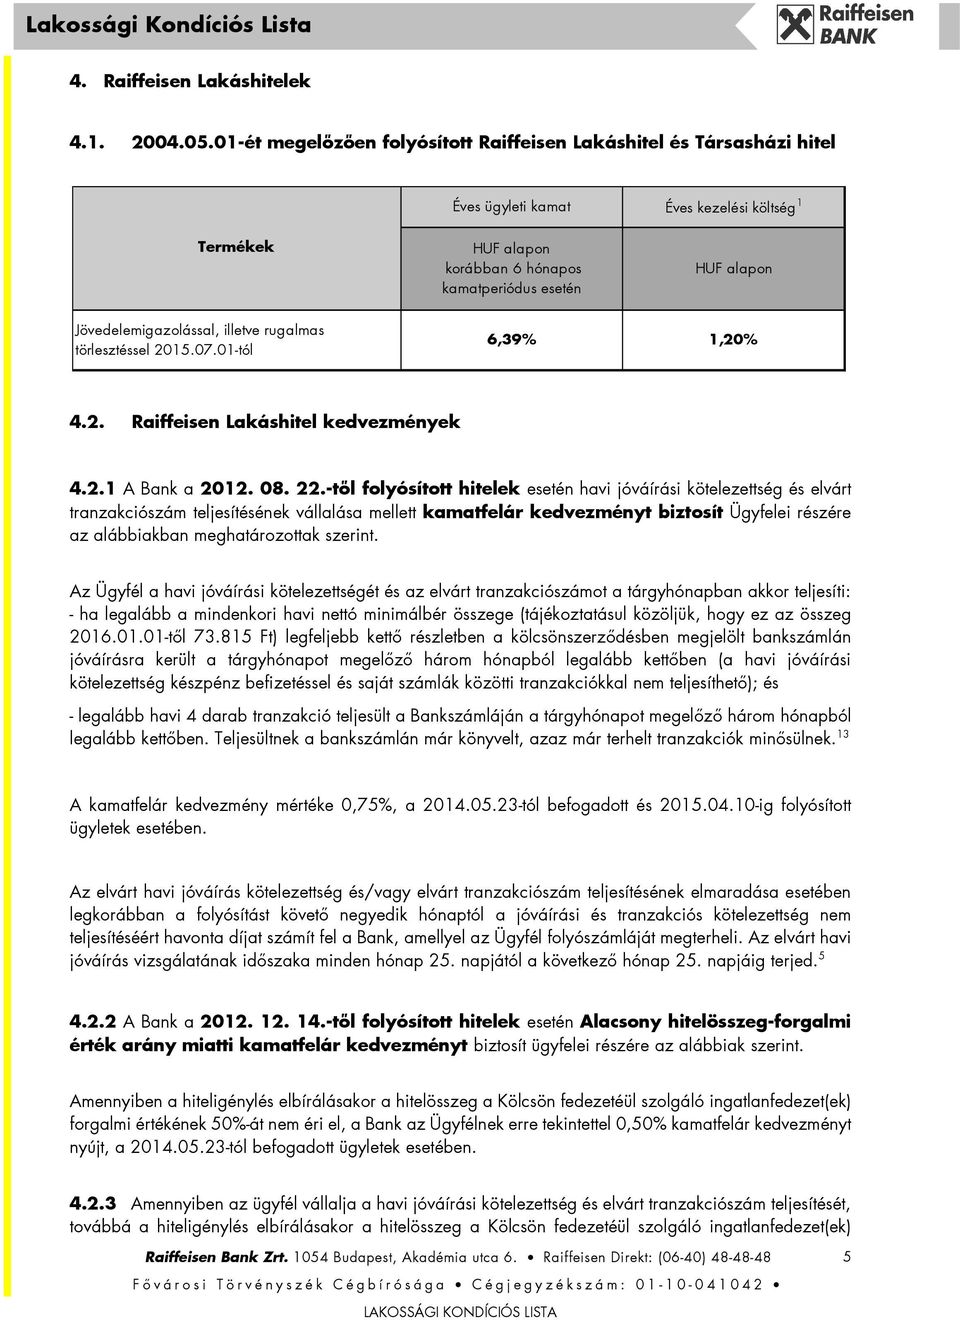 Jövedelemigazolással, illetve rugalmas törlesztéssel 2015.07.01-tól 6,39% 4.2. Raiffeisen Lakáshitel kedvezmények 4.2.1 A Bank a 2012. 08. 22.